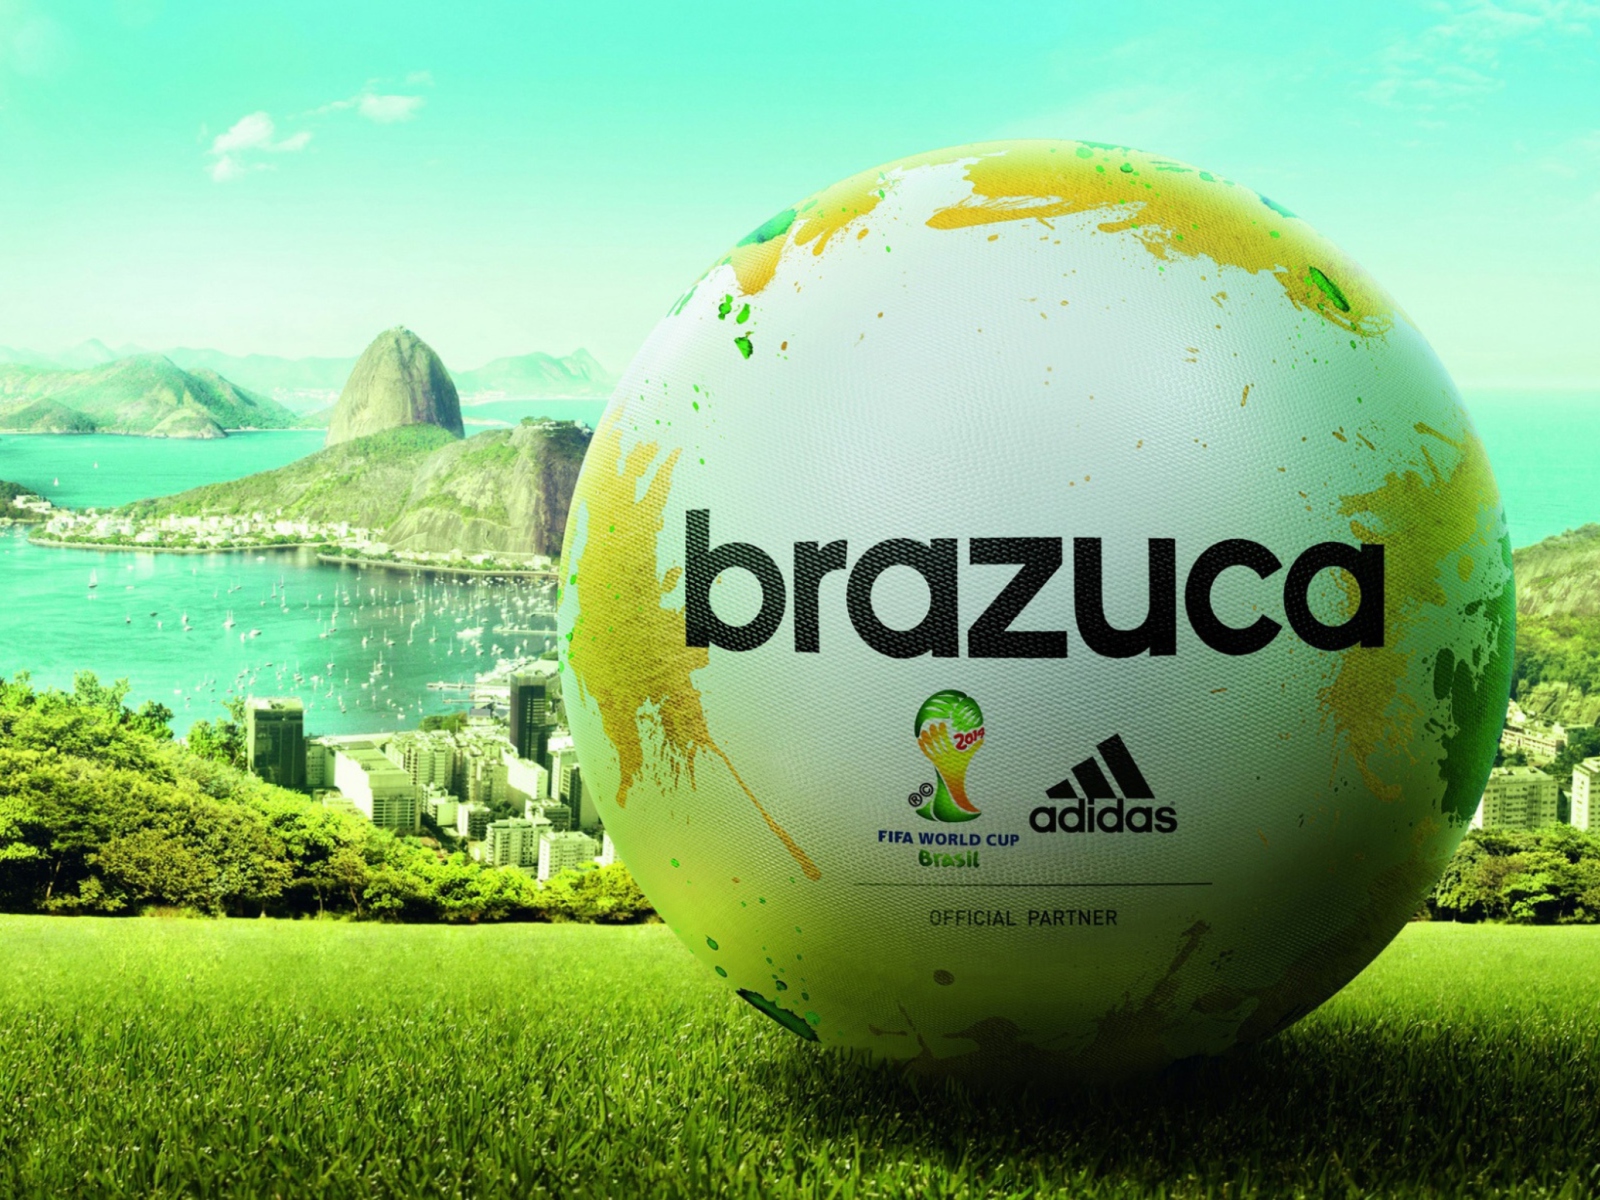 Fondo de pantalla Adidas Brazuca Match Ball FIFA World Cup 2014 1600x1200